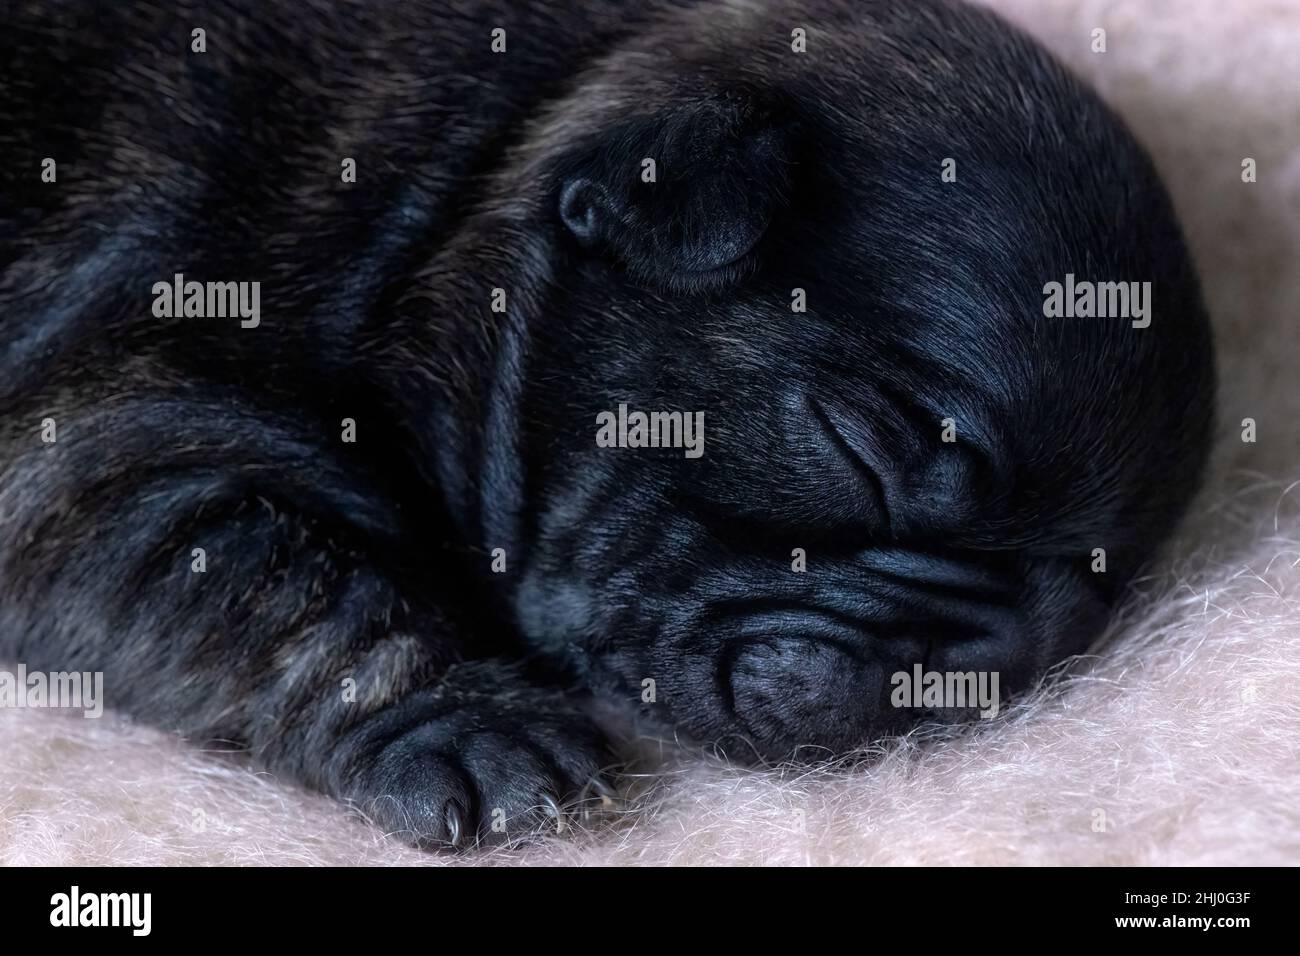 Detaillierte Nahaufnahme eines zwei Wochen alten gesunden französischen Bulldoggen-Welpen, der Kopf und Füße vor hellem Hintergrund für den Kopierbereich zeigt Stockfoto